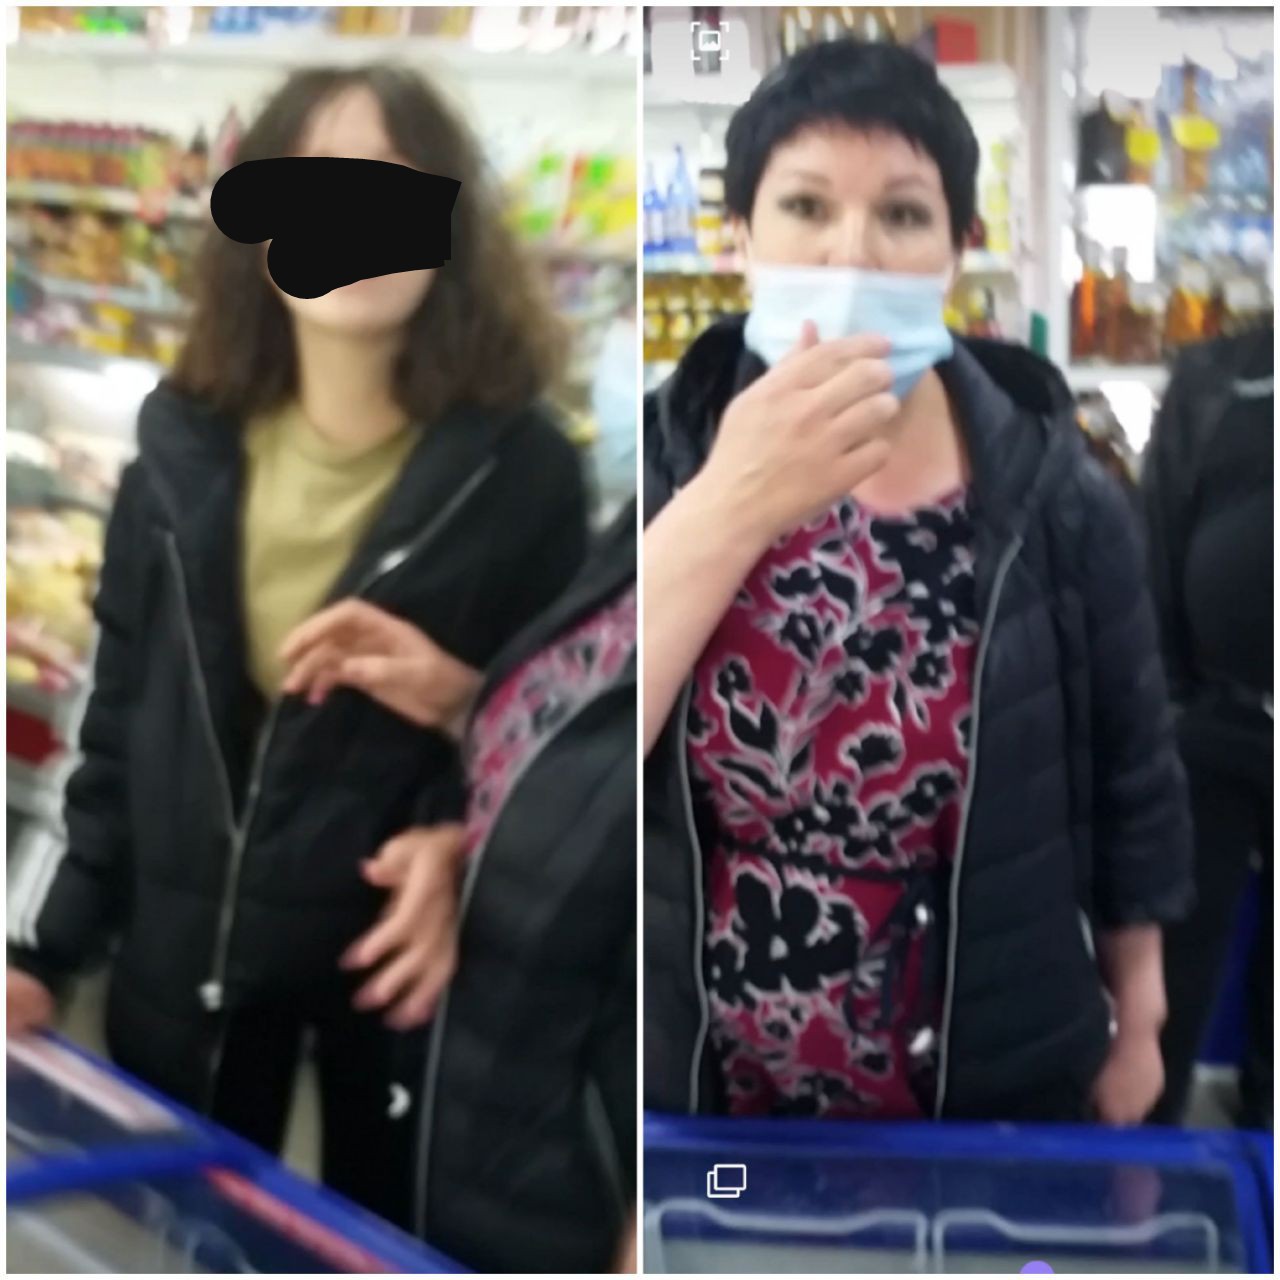 Посетительницы магазина на Острове устроили дебош из-за просьбы надеть маски (видео)